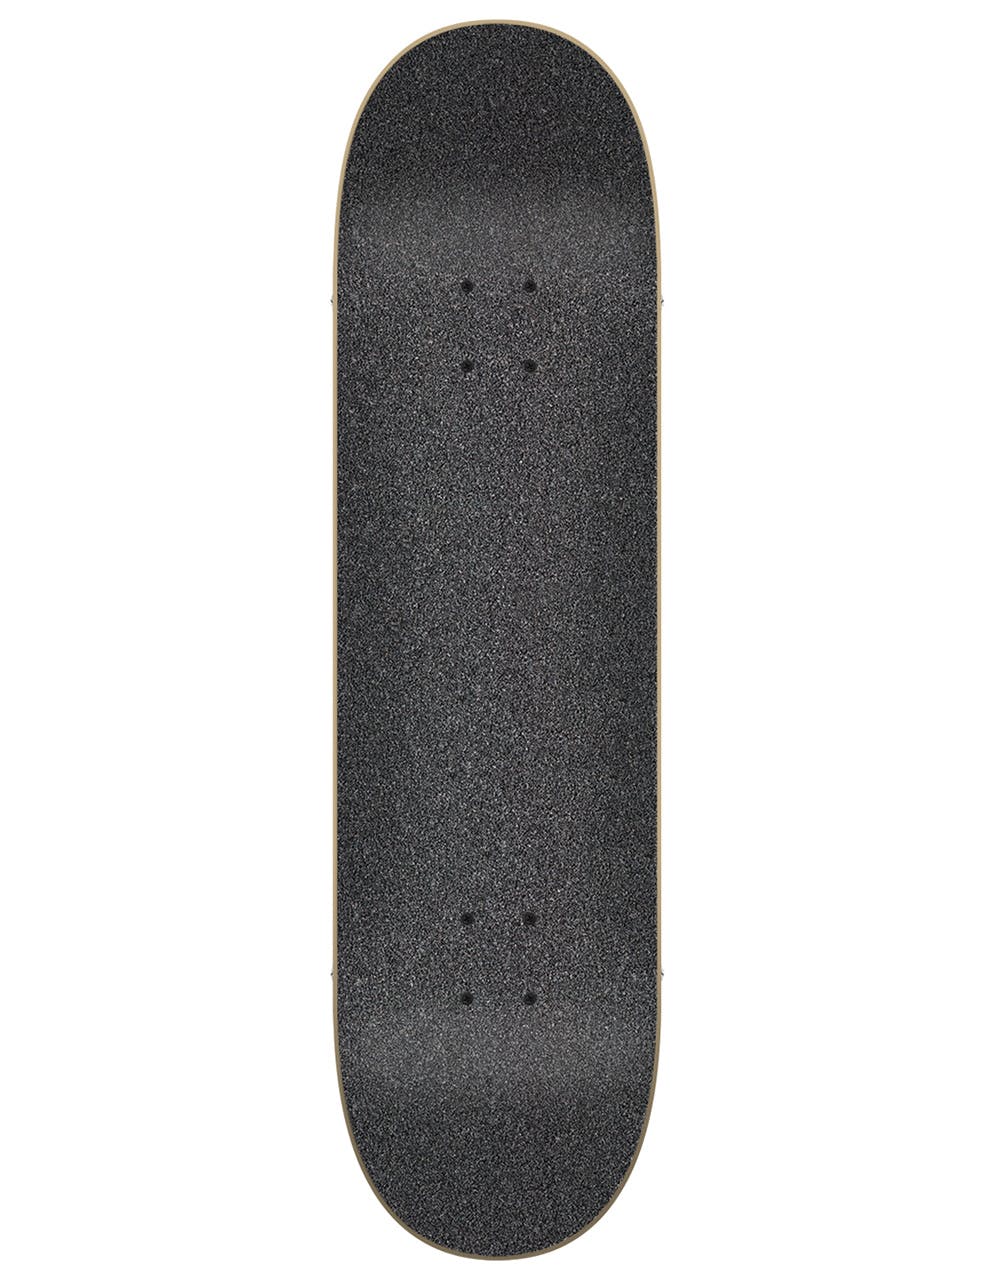 Flip Destroyer Complete Skateboard - 7.5"